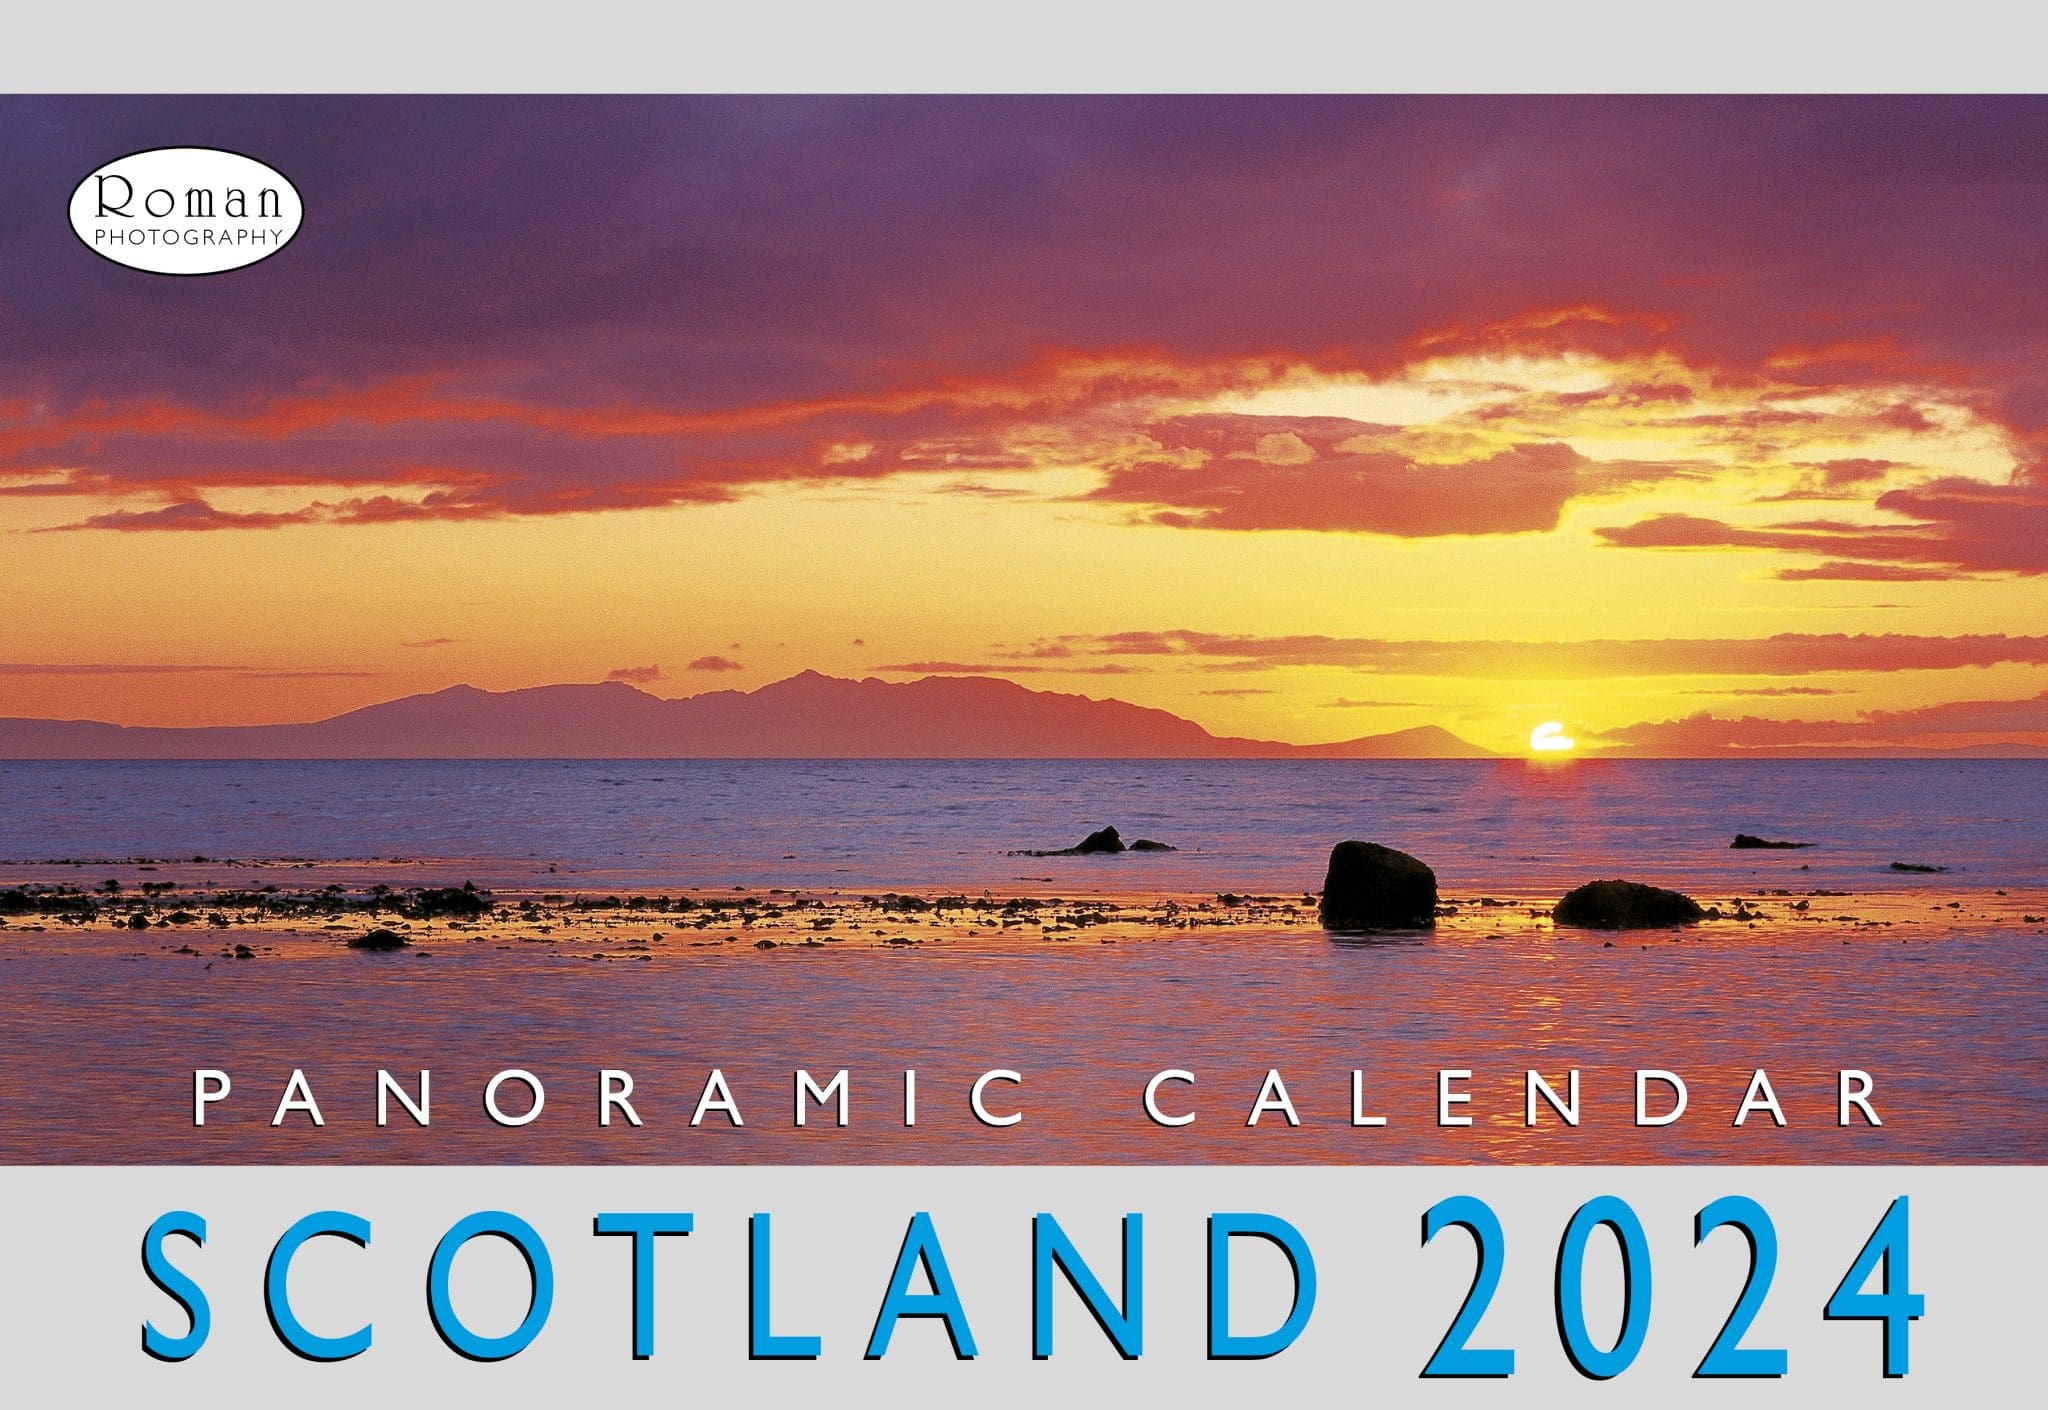 Scotland Panoramic 2024 Calendar Roman Photography